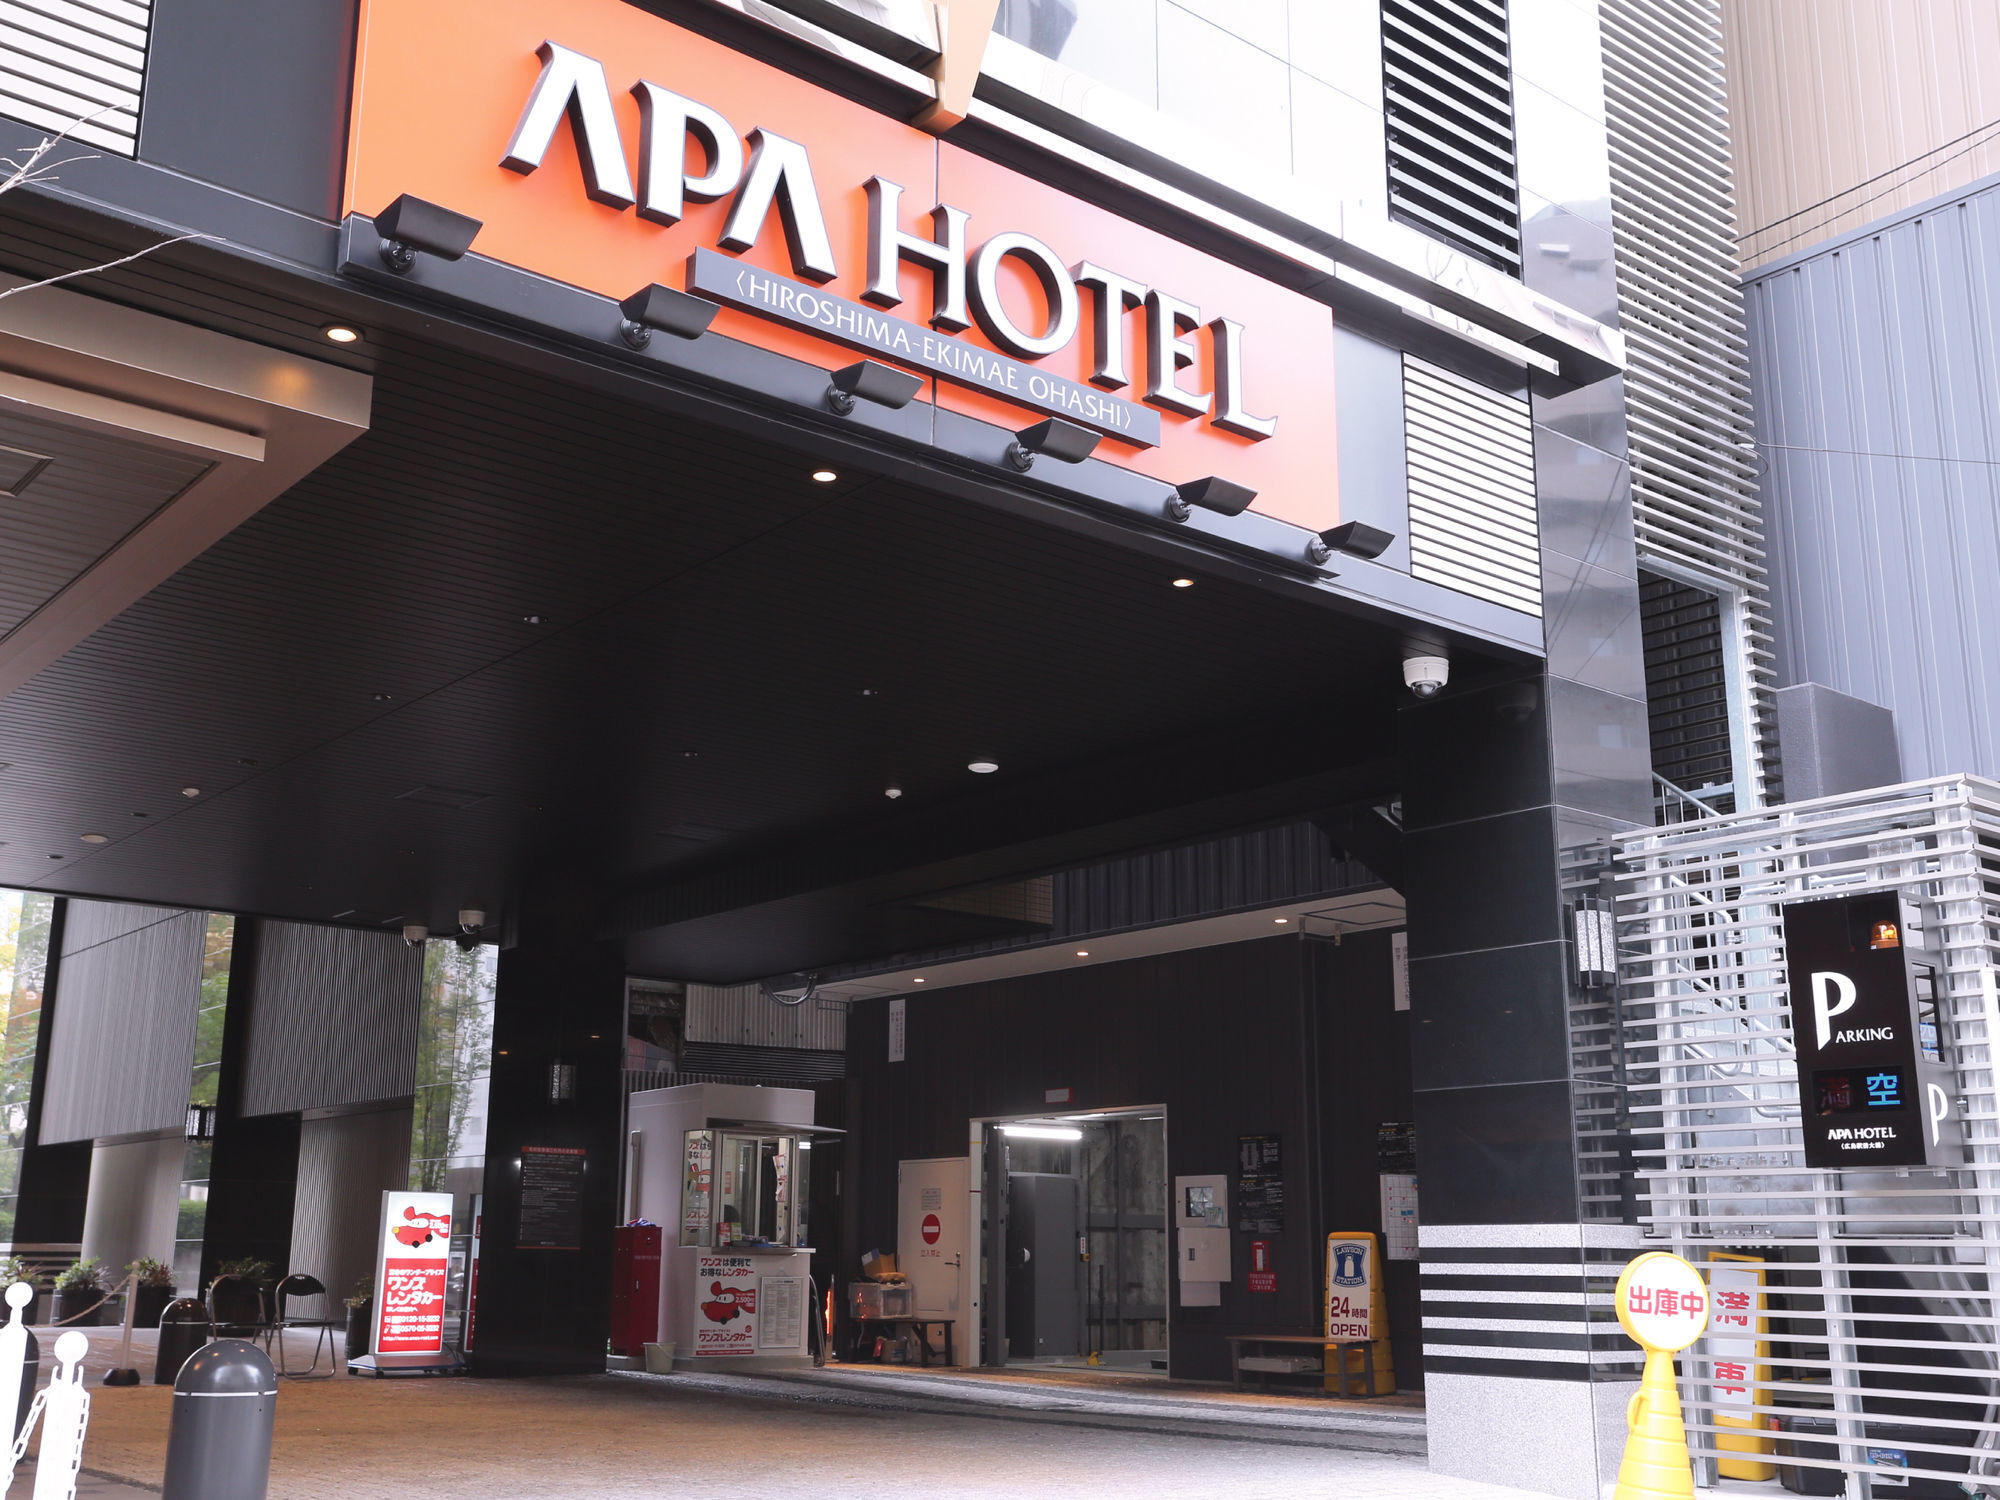 Apa Hotel Hiroshima-Ekimae Ohashi Экстерьер фото